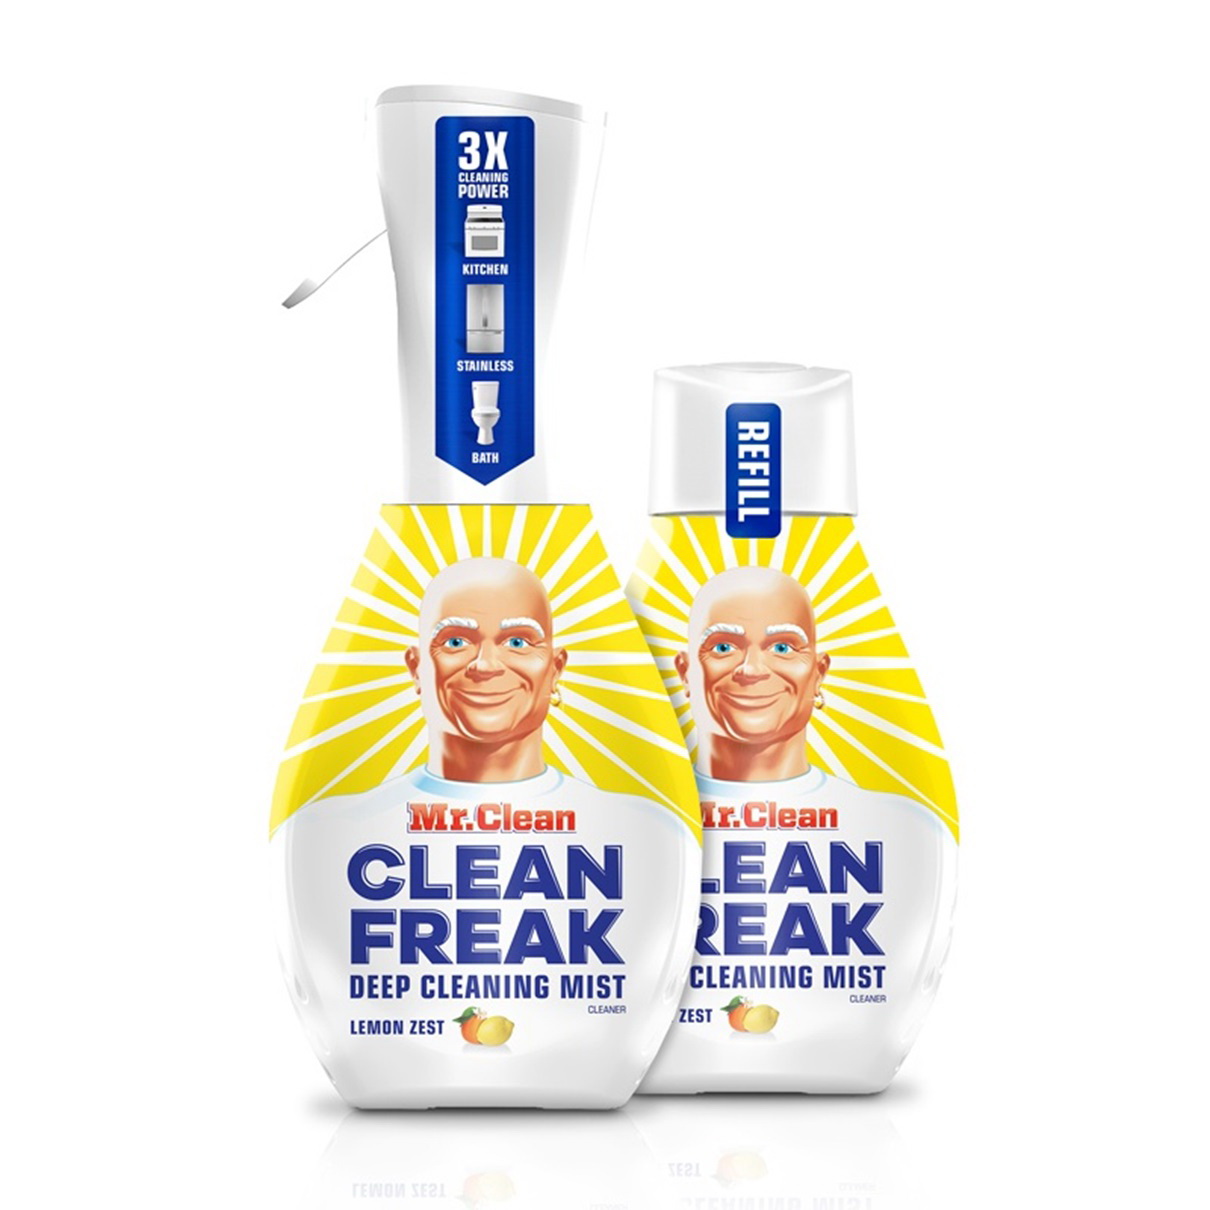 Mr Clean COLORmaxx 79129 Clean Freak Mist, 16 oz, Liquid